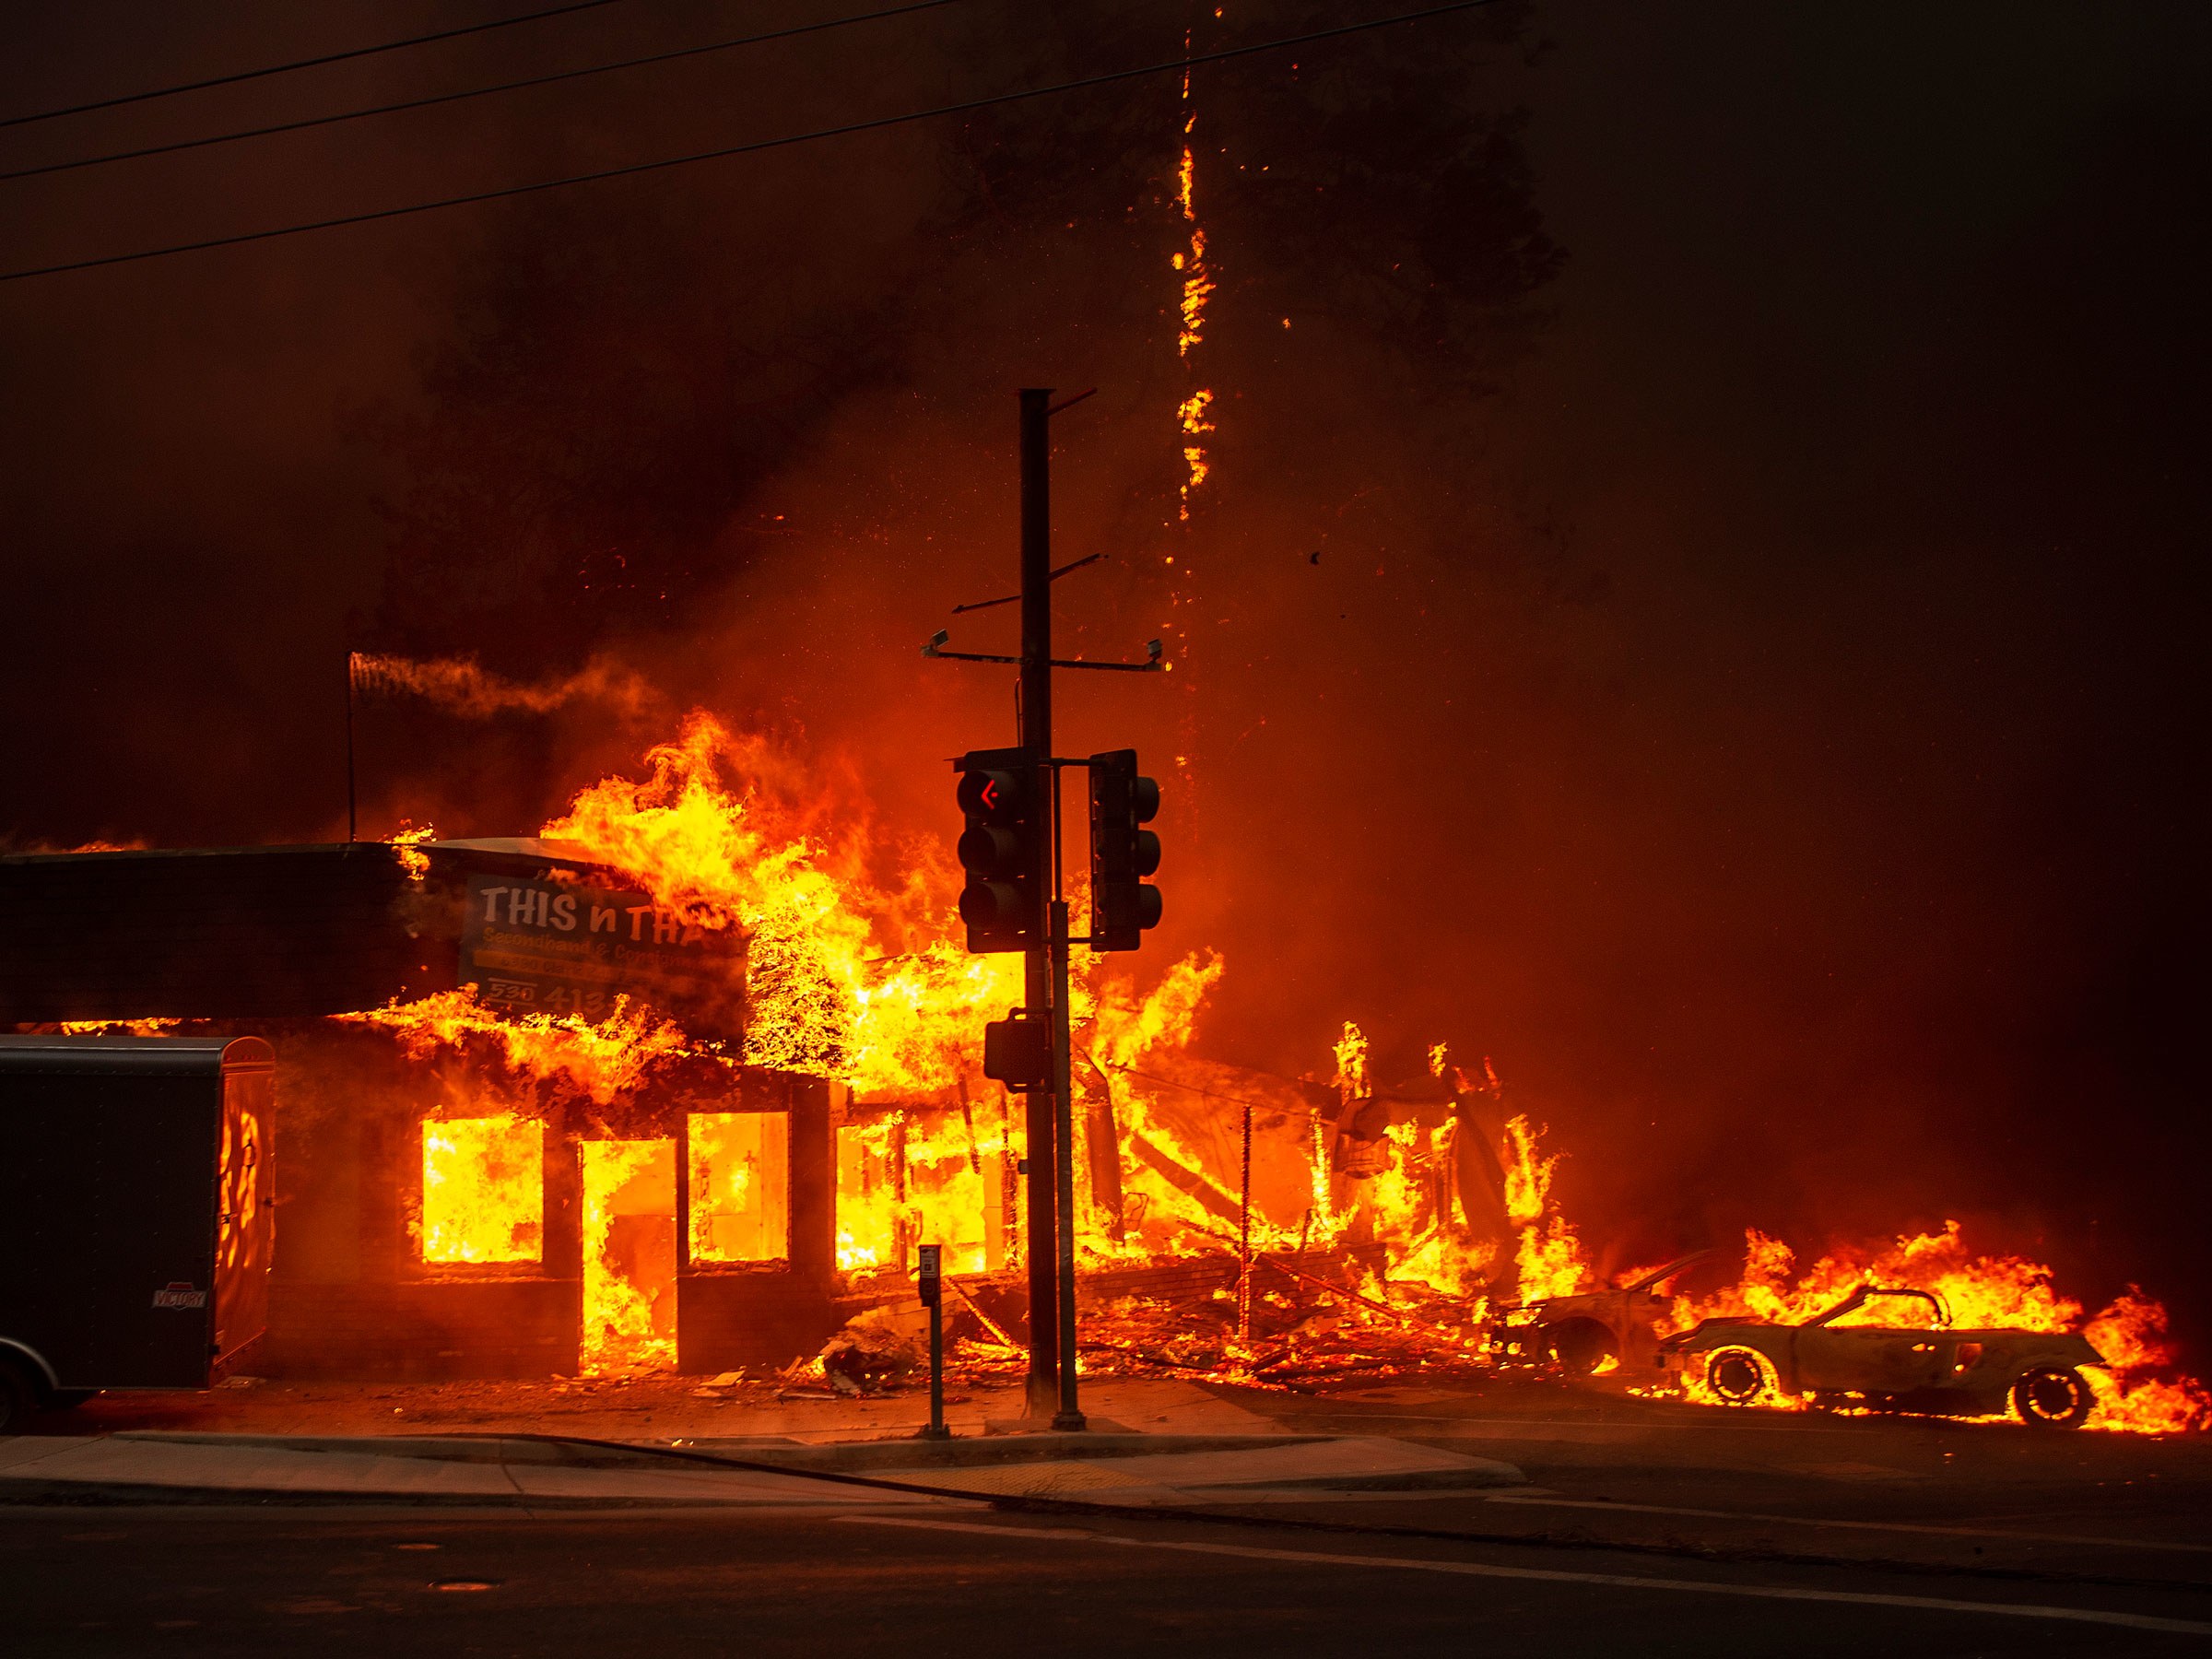 美专家:加州森林大火烧出了美国管理漏洞,房地产开发不能任性